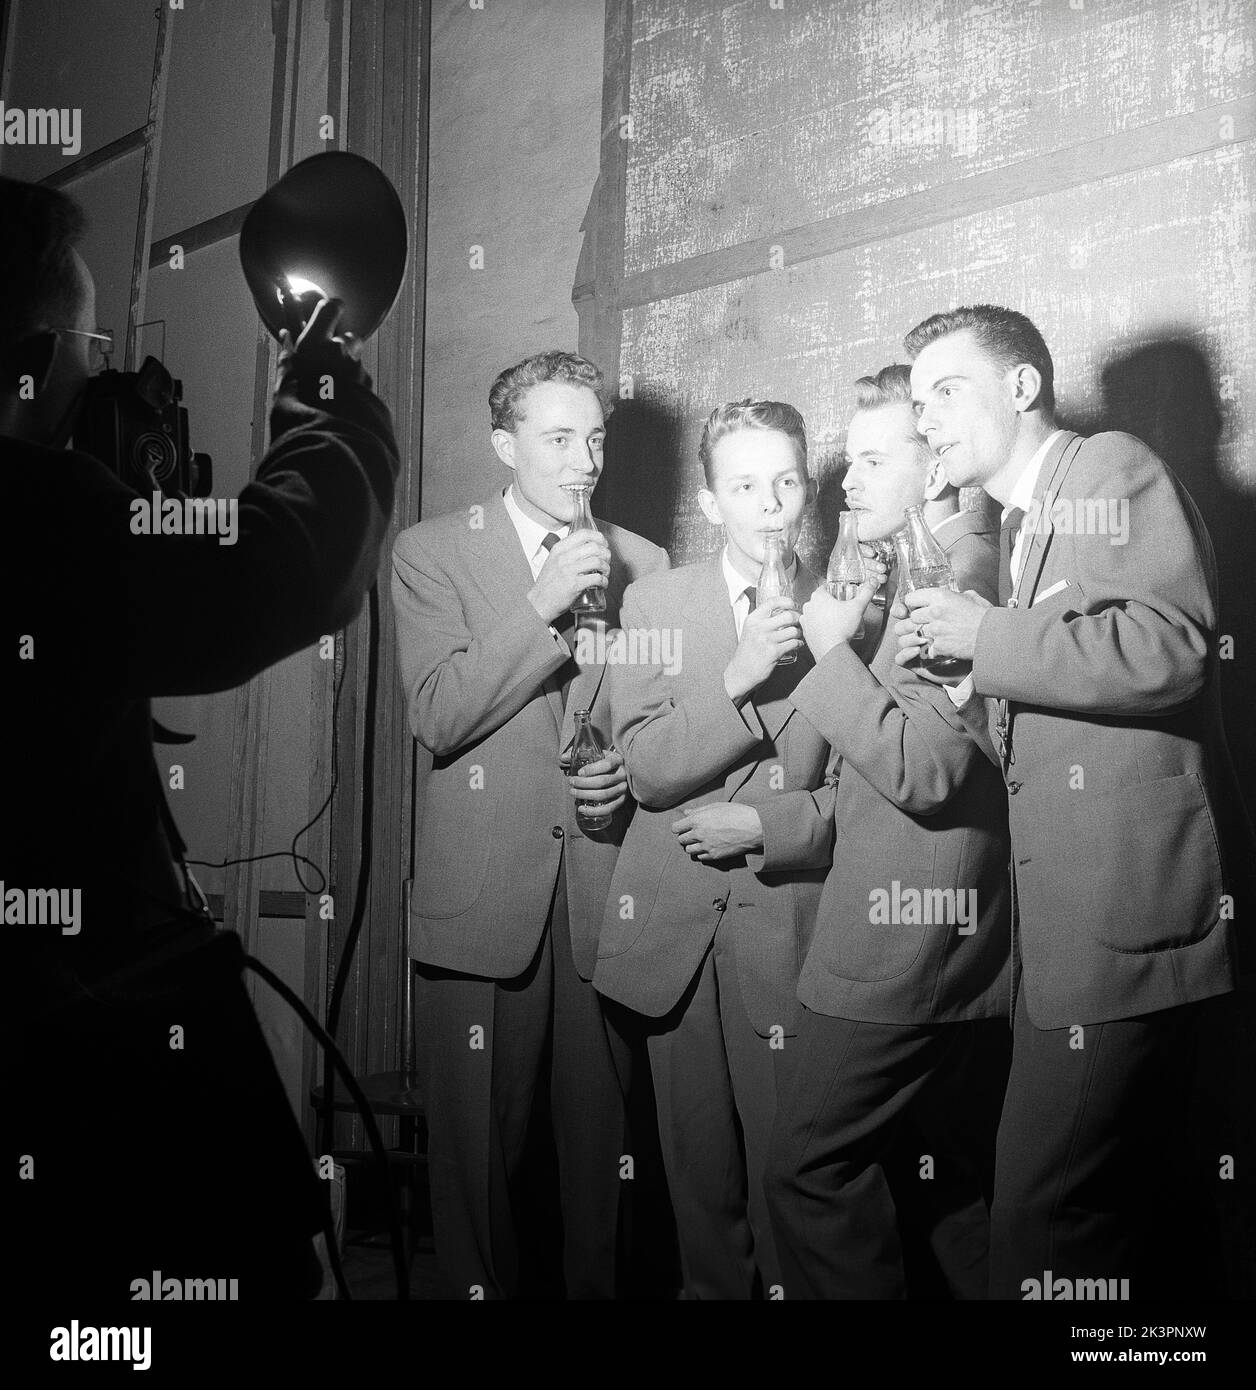 1950s Talente. Eine Gruppe von vier jungen Männern tritt in eine Talentshow ein und spielt Musik, die in Coca-Cola-Flaschen weht. Da die Flaschen mit unterschiedlichen Wasserständen gefüllt sind, machen sie beim Aufblasen unterschiedliche Geräusche, genug scheint es, ein Musikstück lang genug zu machen, um damit aufzutreten. Beachten Sie den Trick des Fotografen, andere Fotografen Lichter zu verwenden. Schweden 1954 Kristoffersson Ref. BX36-4 Stockfoto